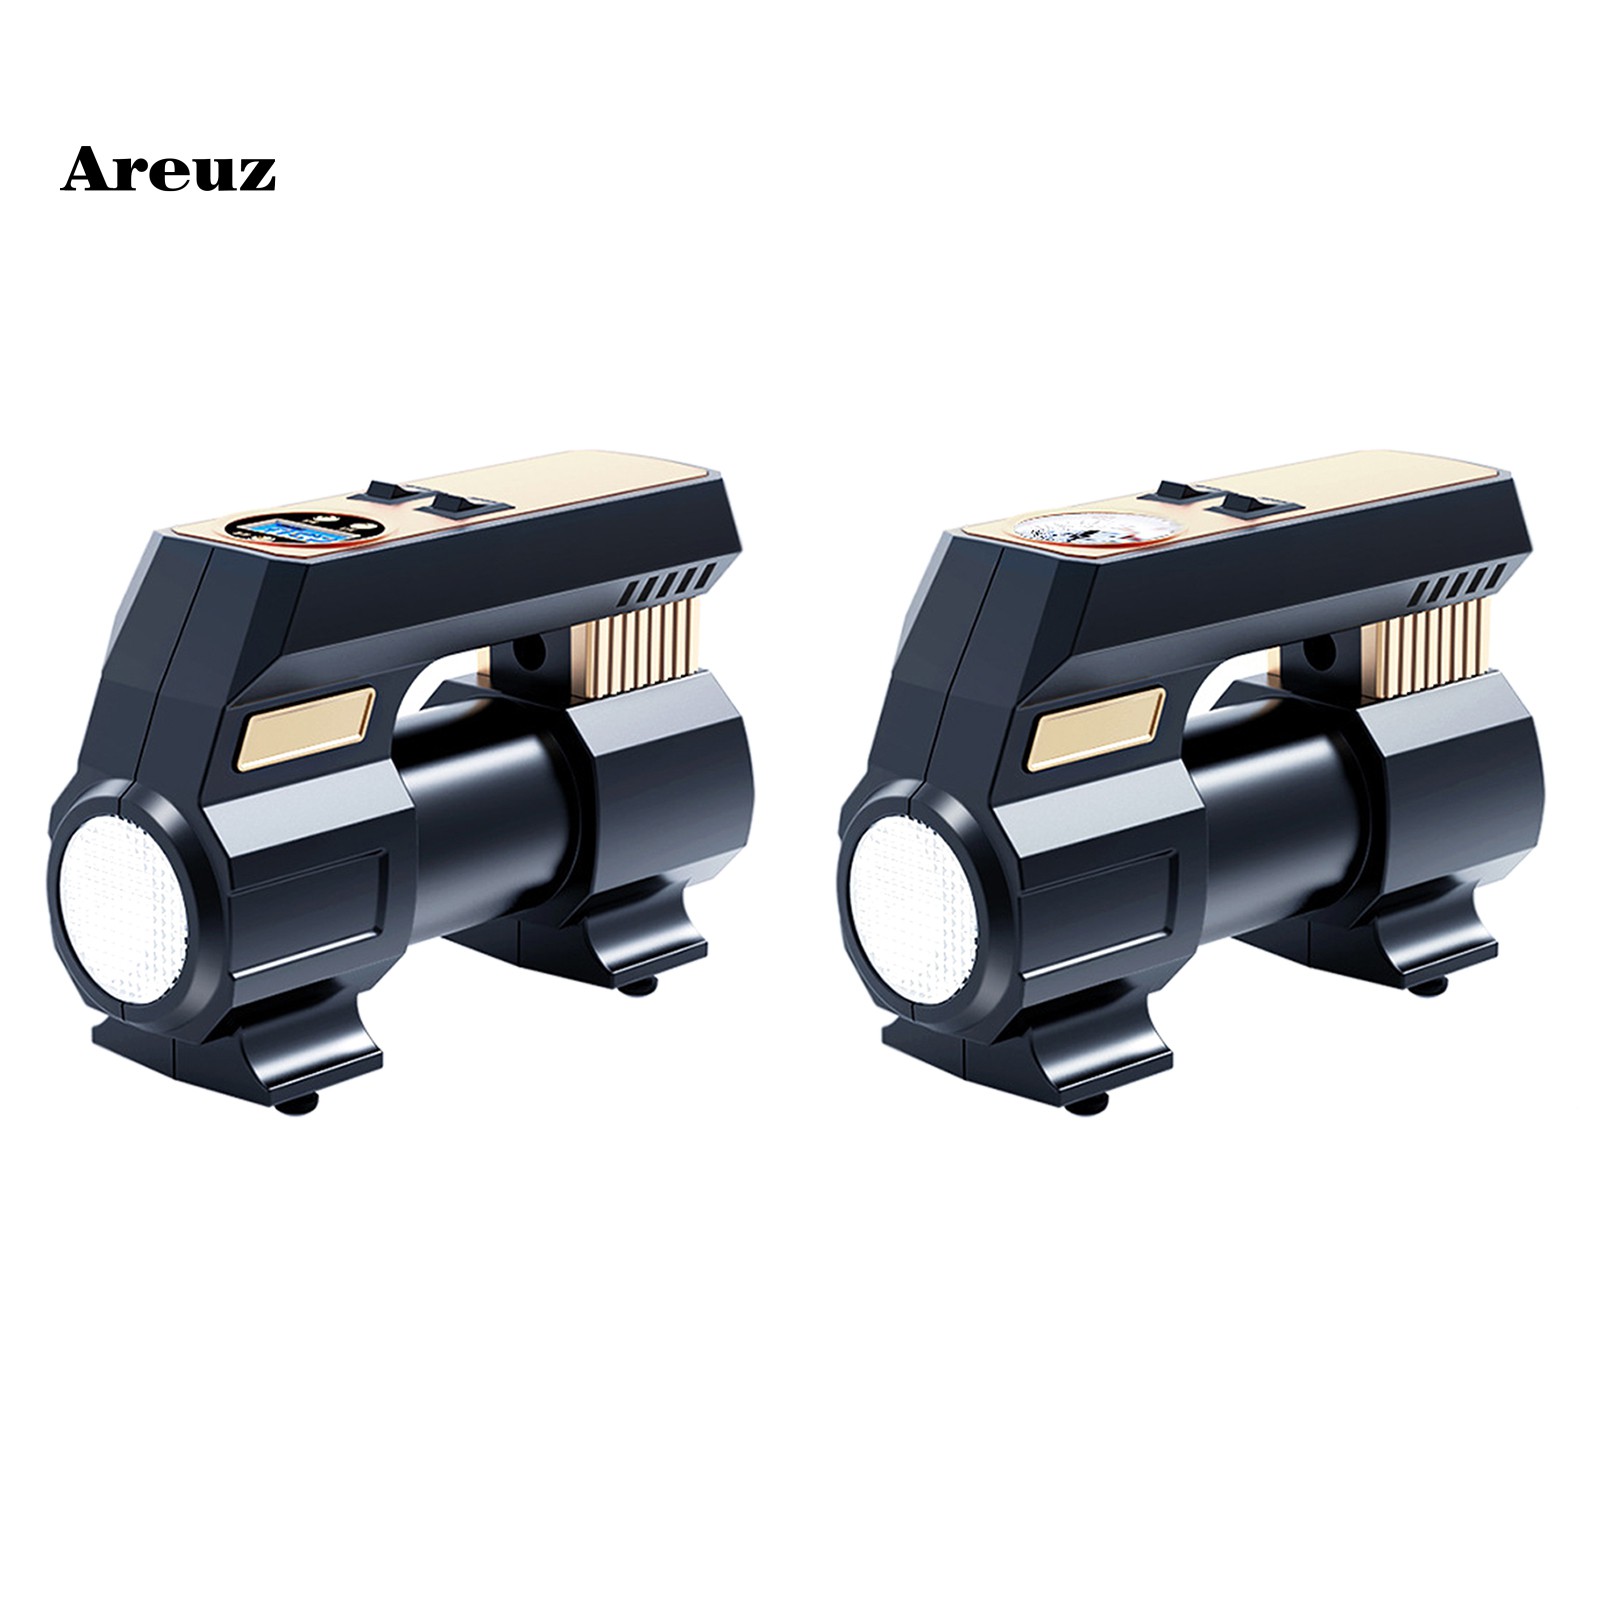 areuz Home  Life Black Car Air Compressor Pointer/Digital Tire Inflator Compressor 30s Quickly Pumping for Auto